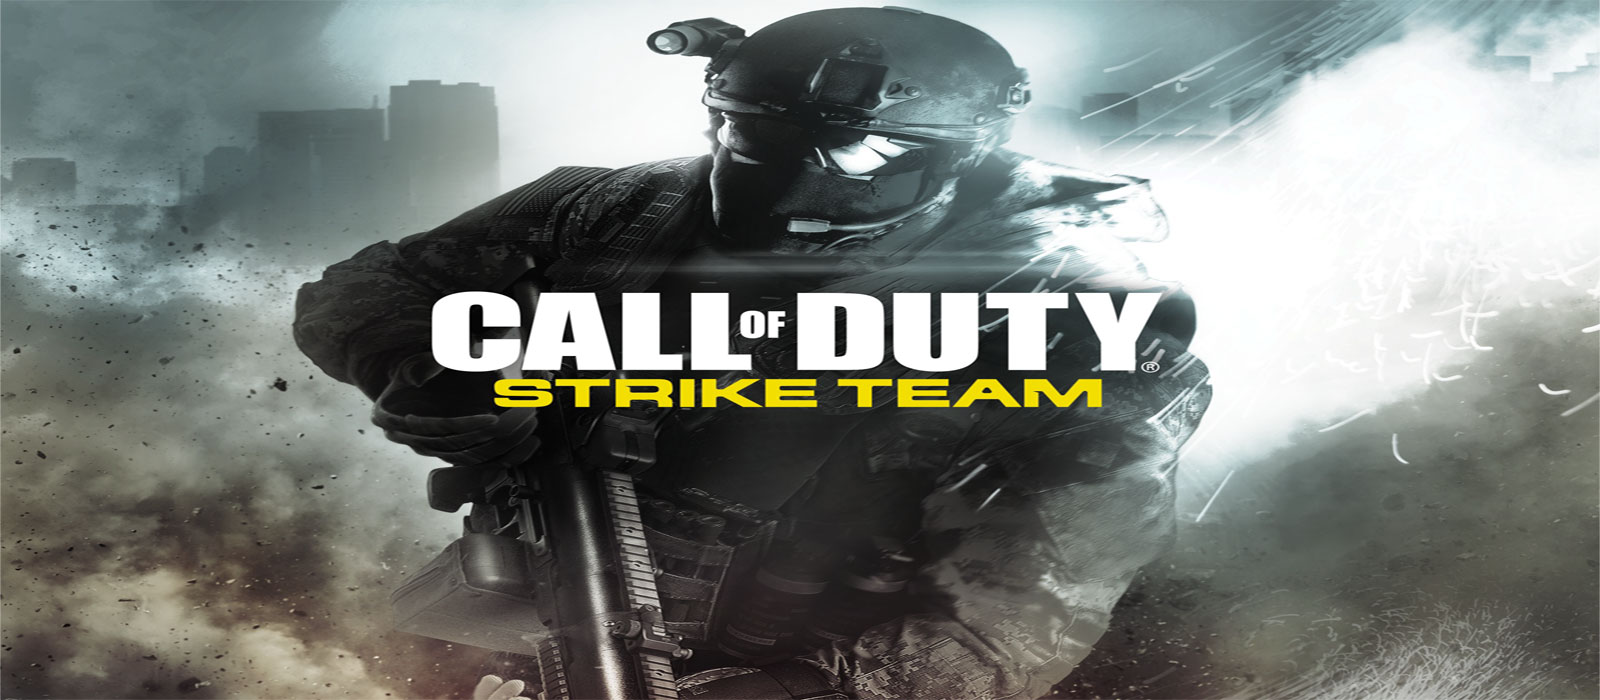 دانلود Call of Duty Strike Team 1.0.30.40254 – ندای وظیفه اندروید + مود + دیتا